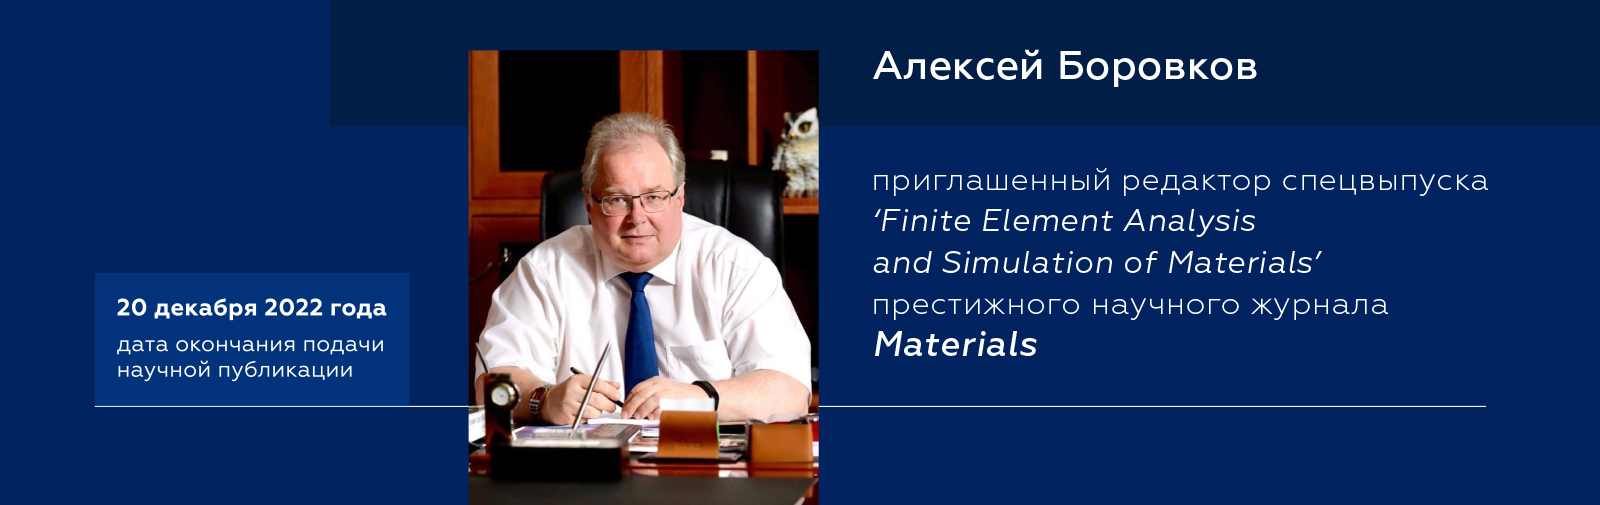 Finite Element Analysis and Simulation of Materials: Алексей Боровков приглашен редактором спецвыпуска престижного журнала MATERIALS